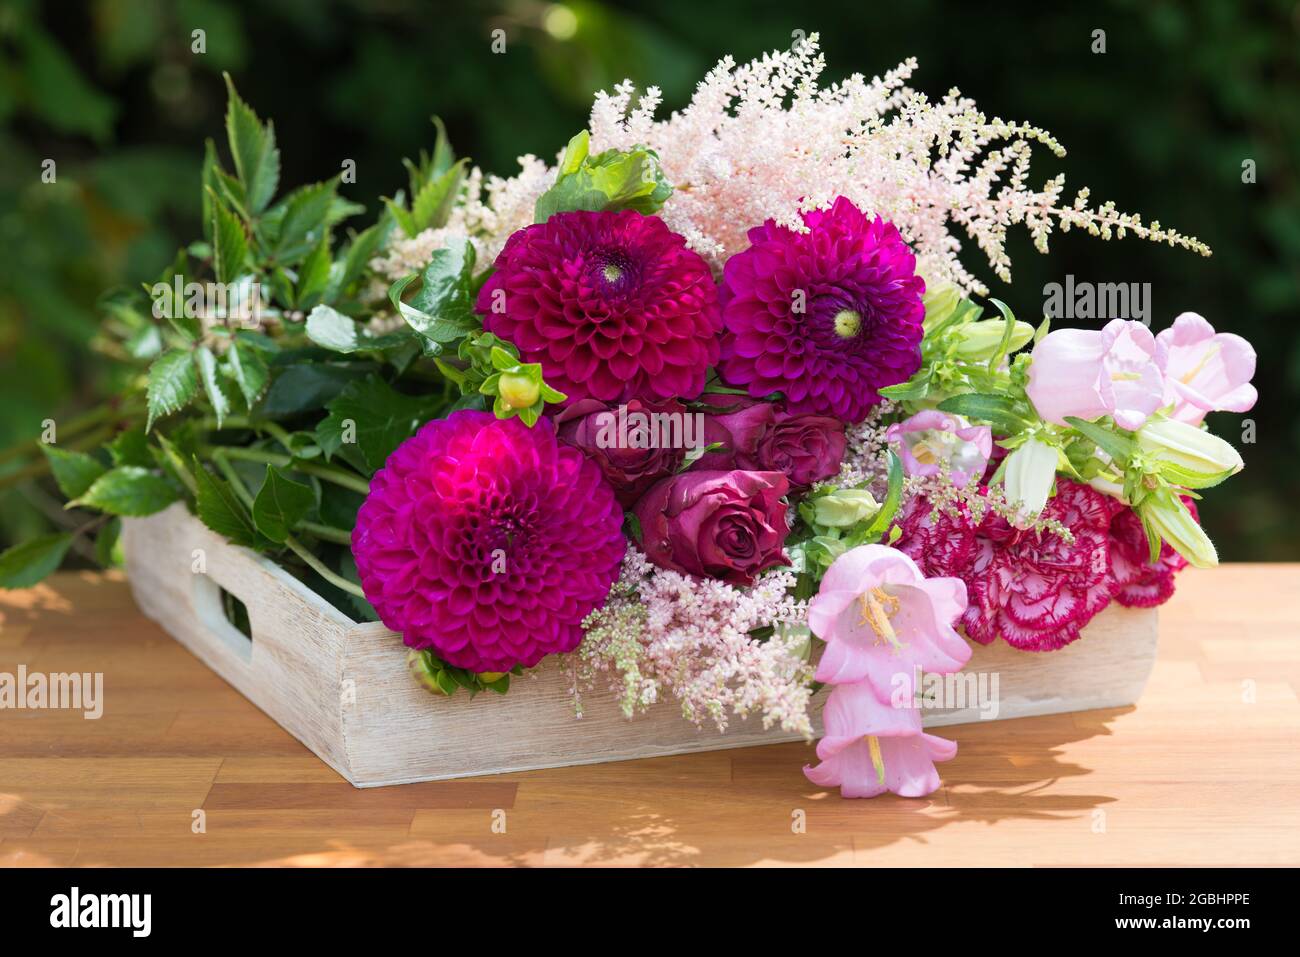 Botanica, disposizione dei fiori su vassoio di legno, PER IL SALUTO/CARTOLINA-USO IN GERM.SPEAK.C ALCUNE RESTRIZIONI POSSONO APPLICARSI Foto Stock